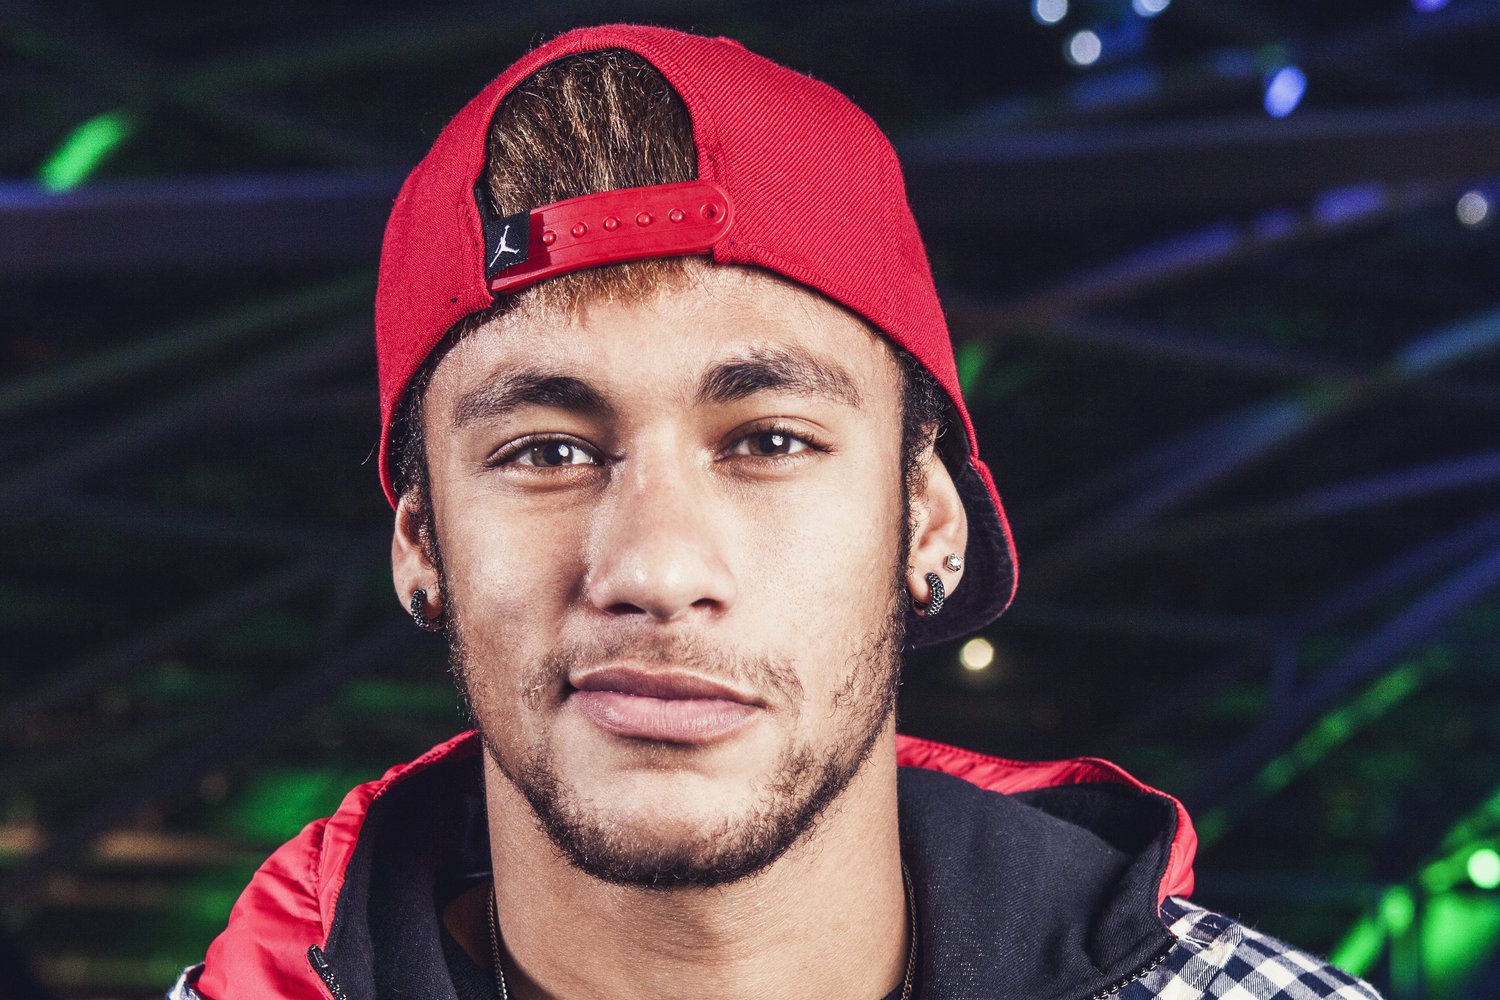 Amigo divulga primeira foto de Neymar com caxumba